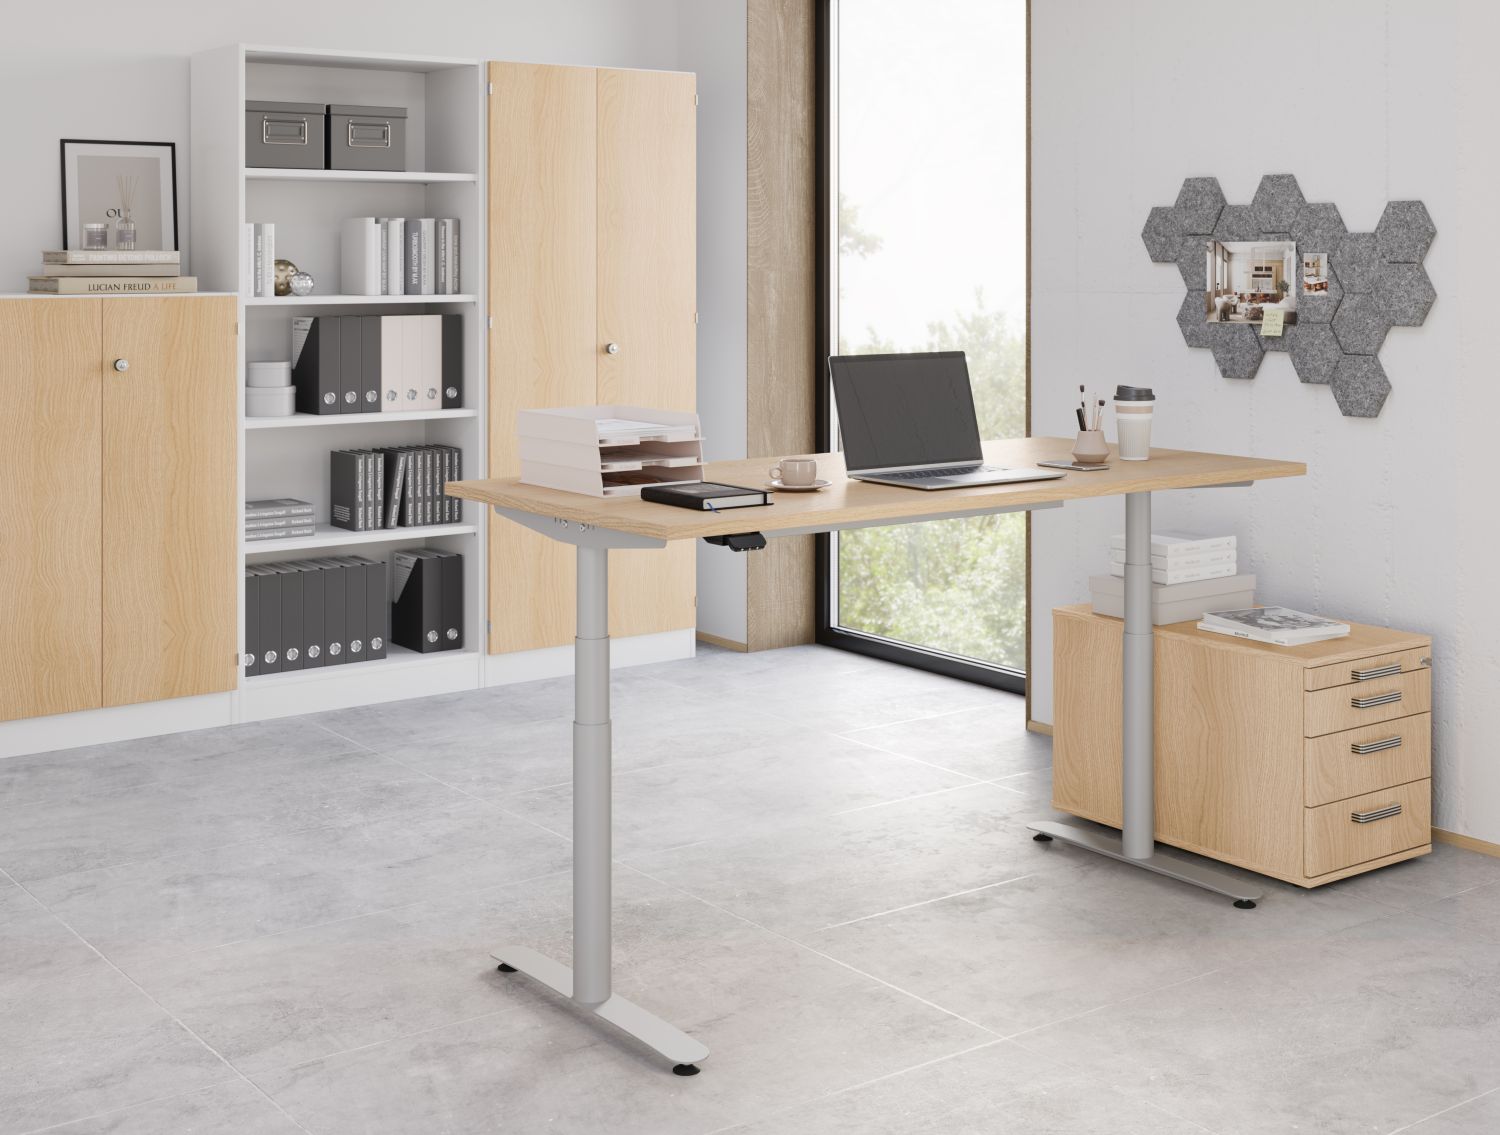 Bluetooth-Sitz-Stehschreibtisch mit massiver Holztischplatte und robuste Büromöbel Eiche-Holz